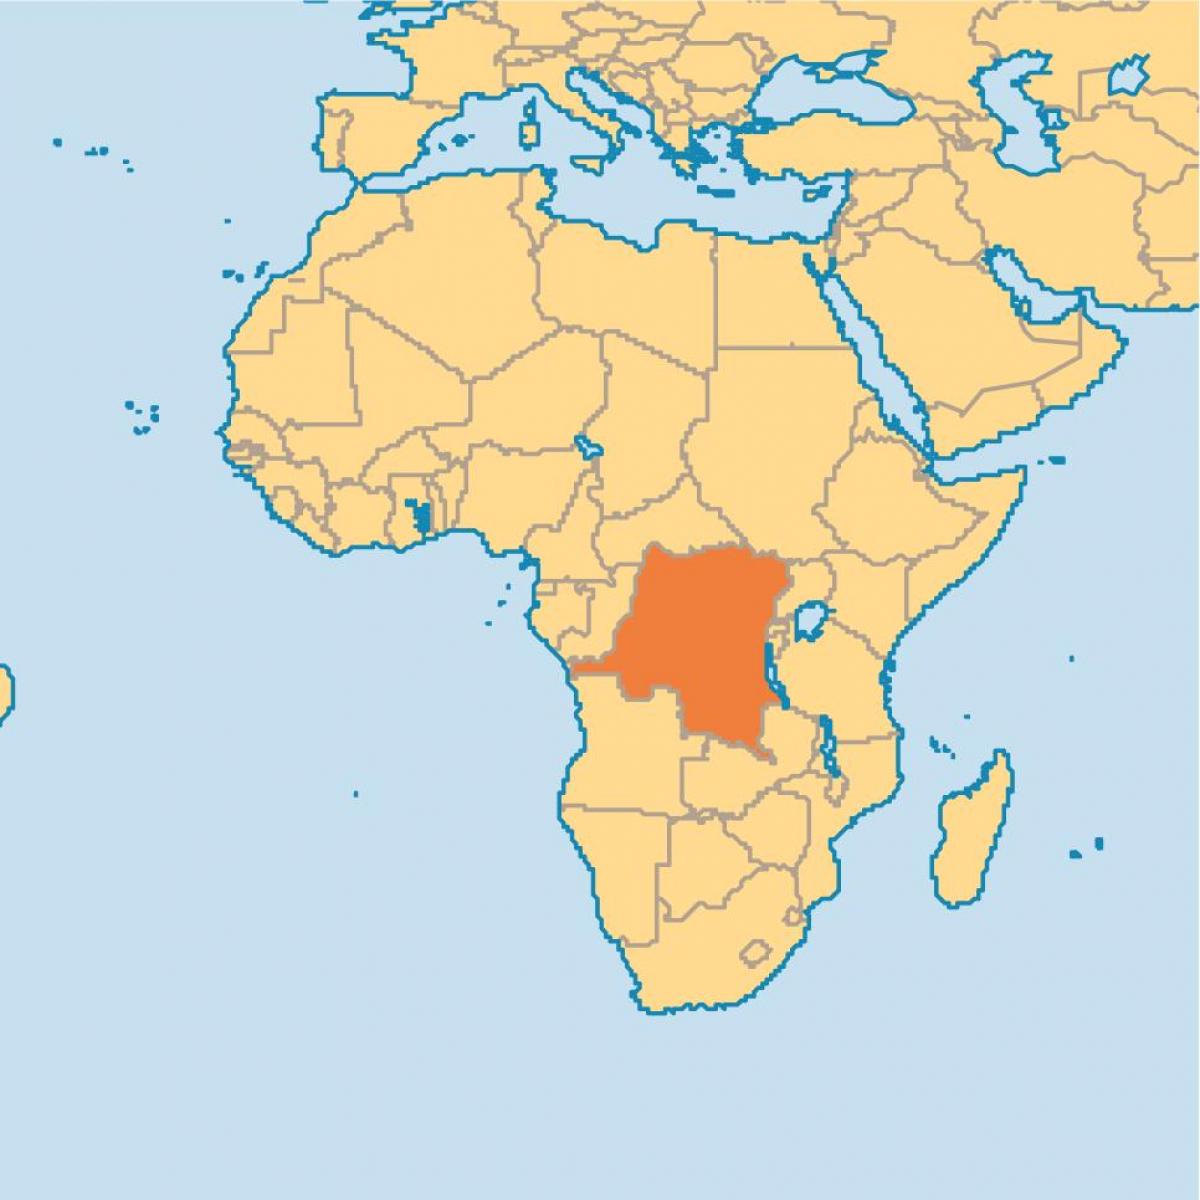 Mapa de zaire no mundo